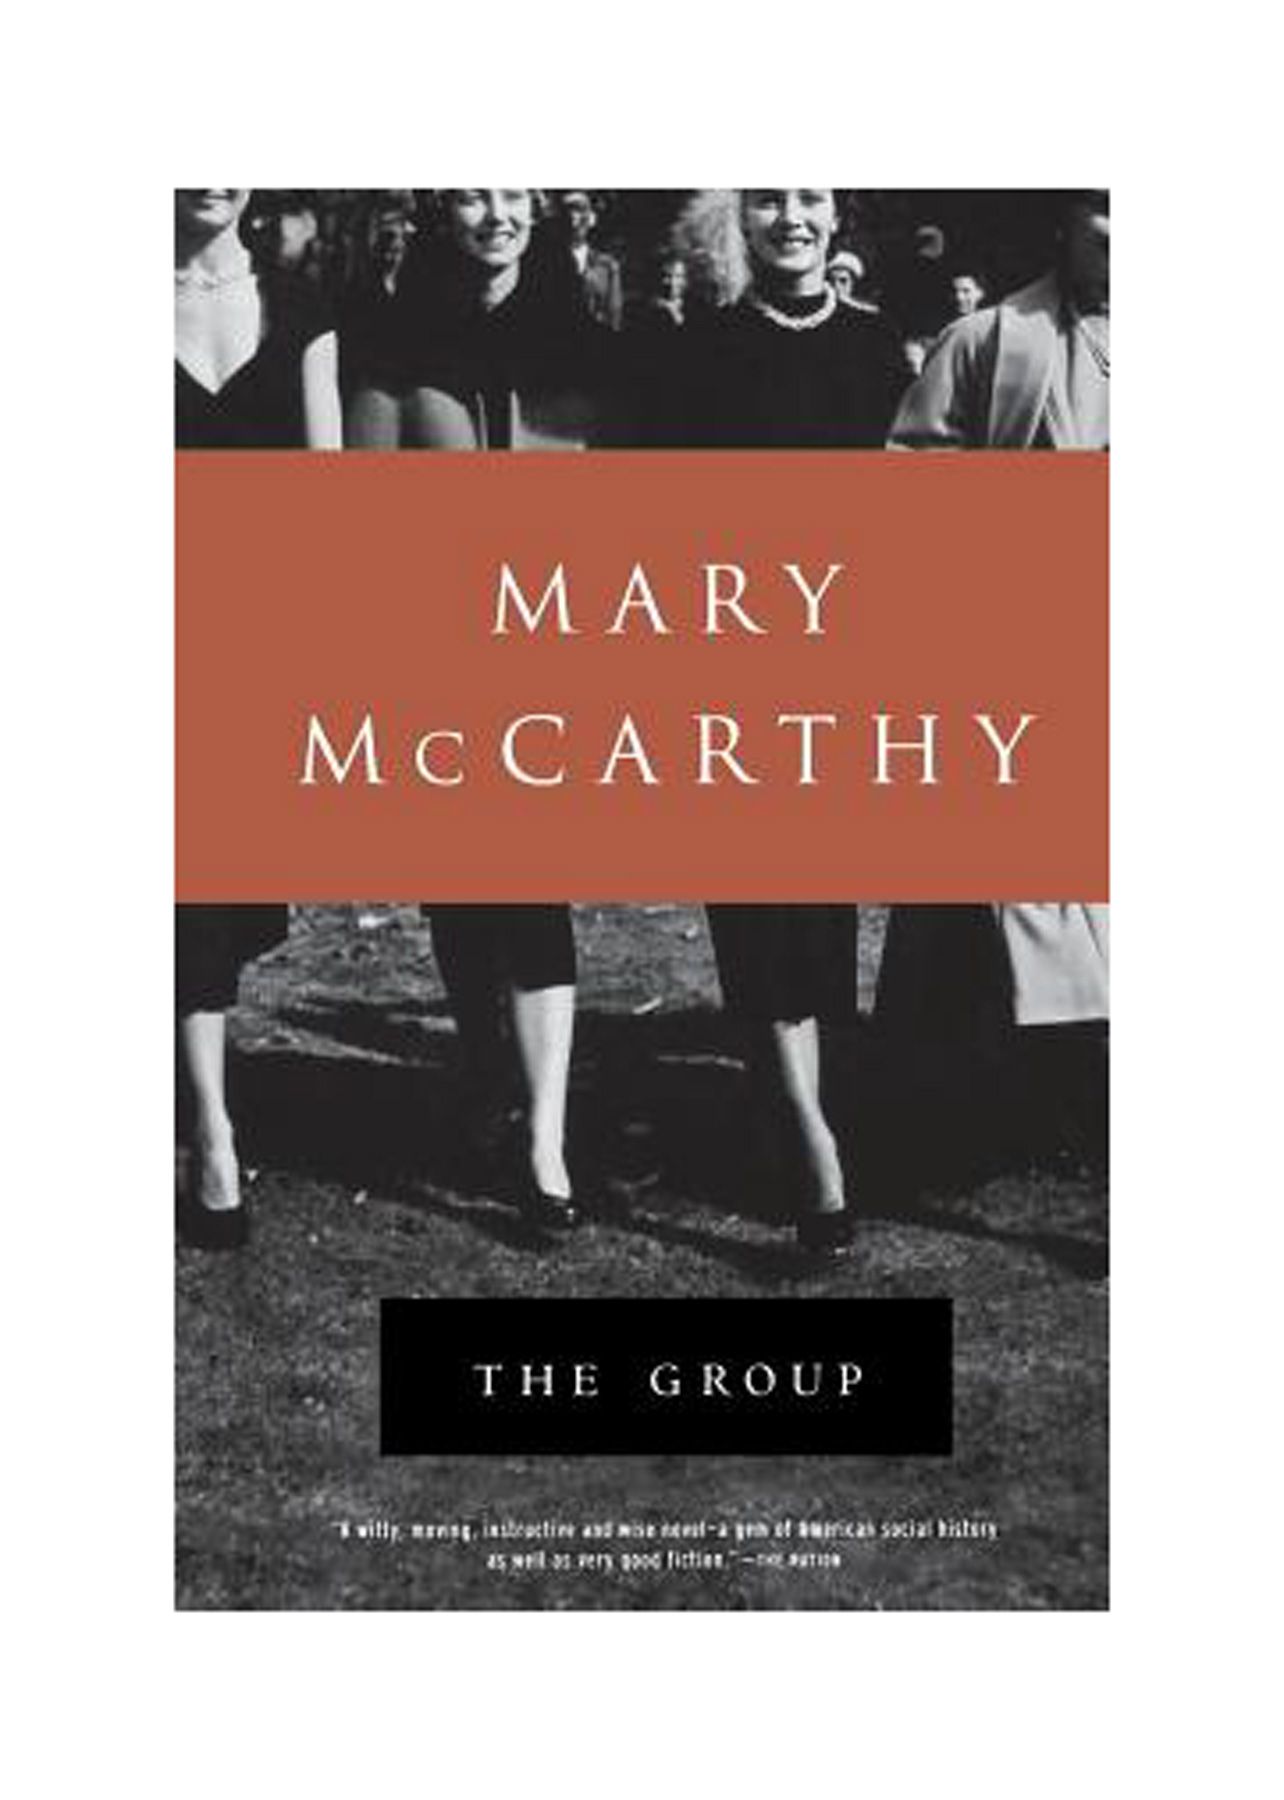 كتب جيدة للقراءة في العشرينات من العمر: 'المجموعة' لماري مكارثي